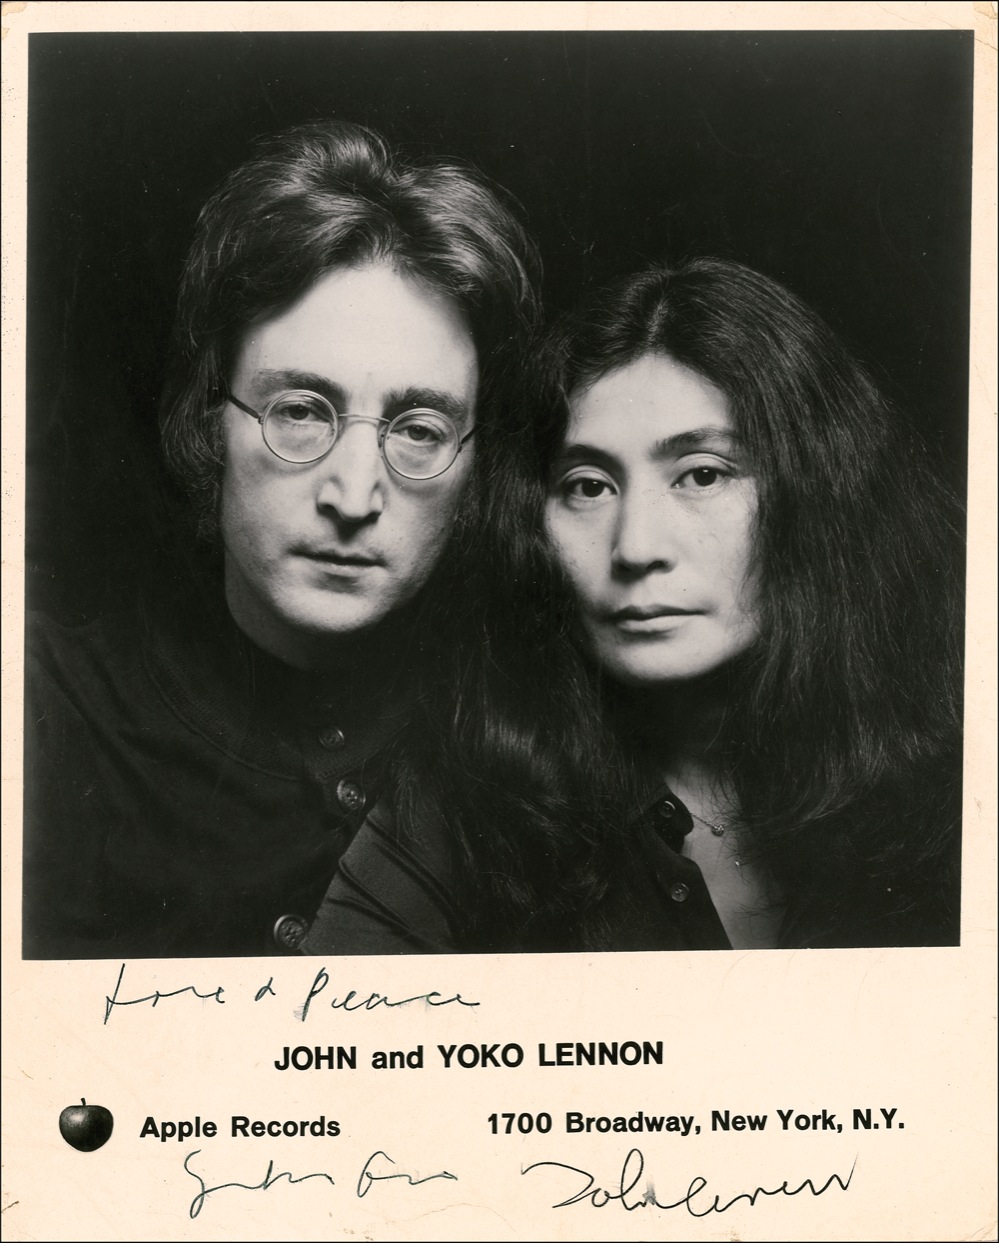 Lot #783 John Lennon and Yoko Ono